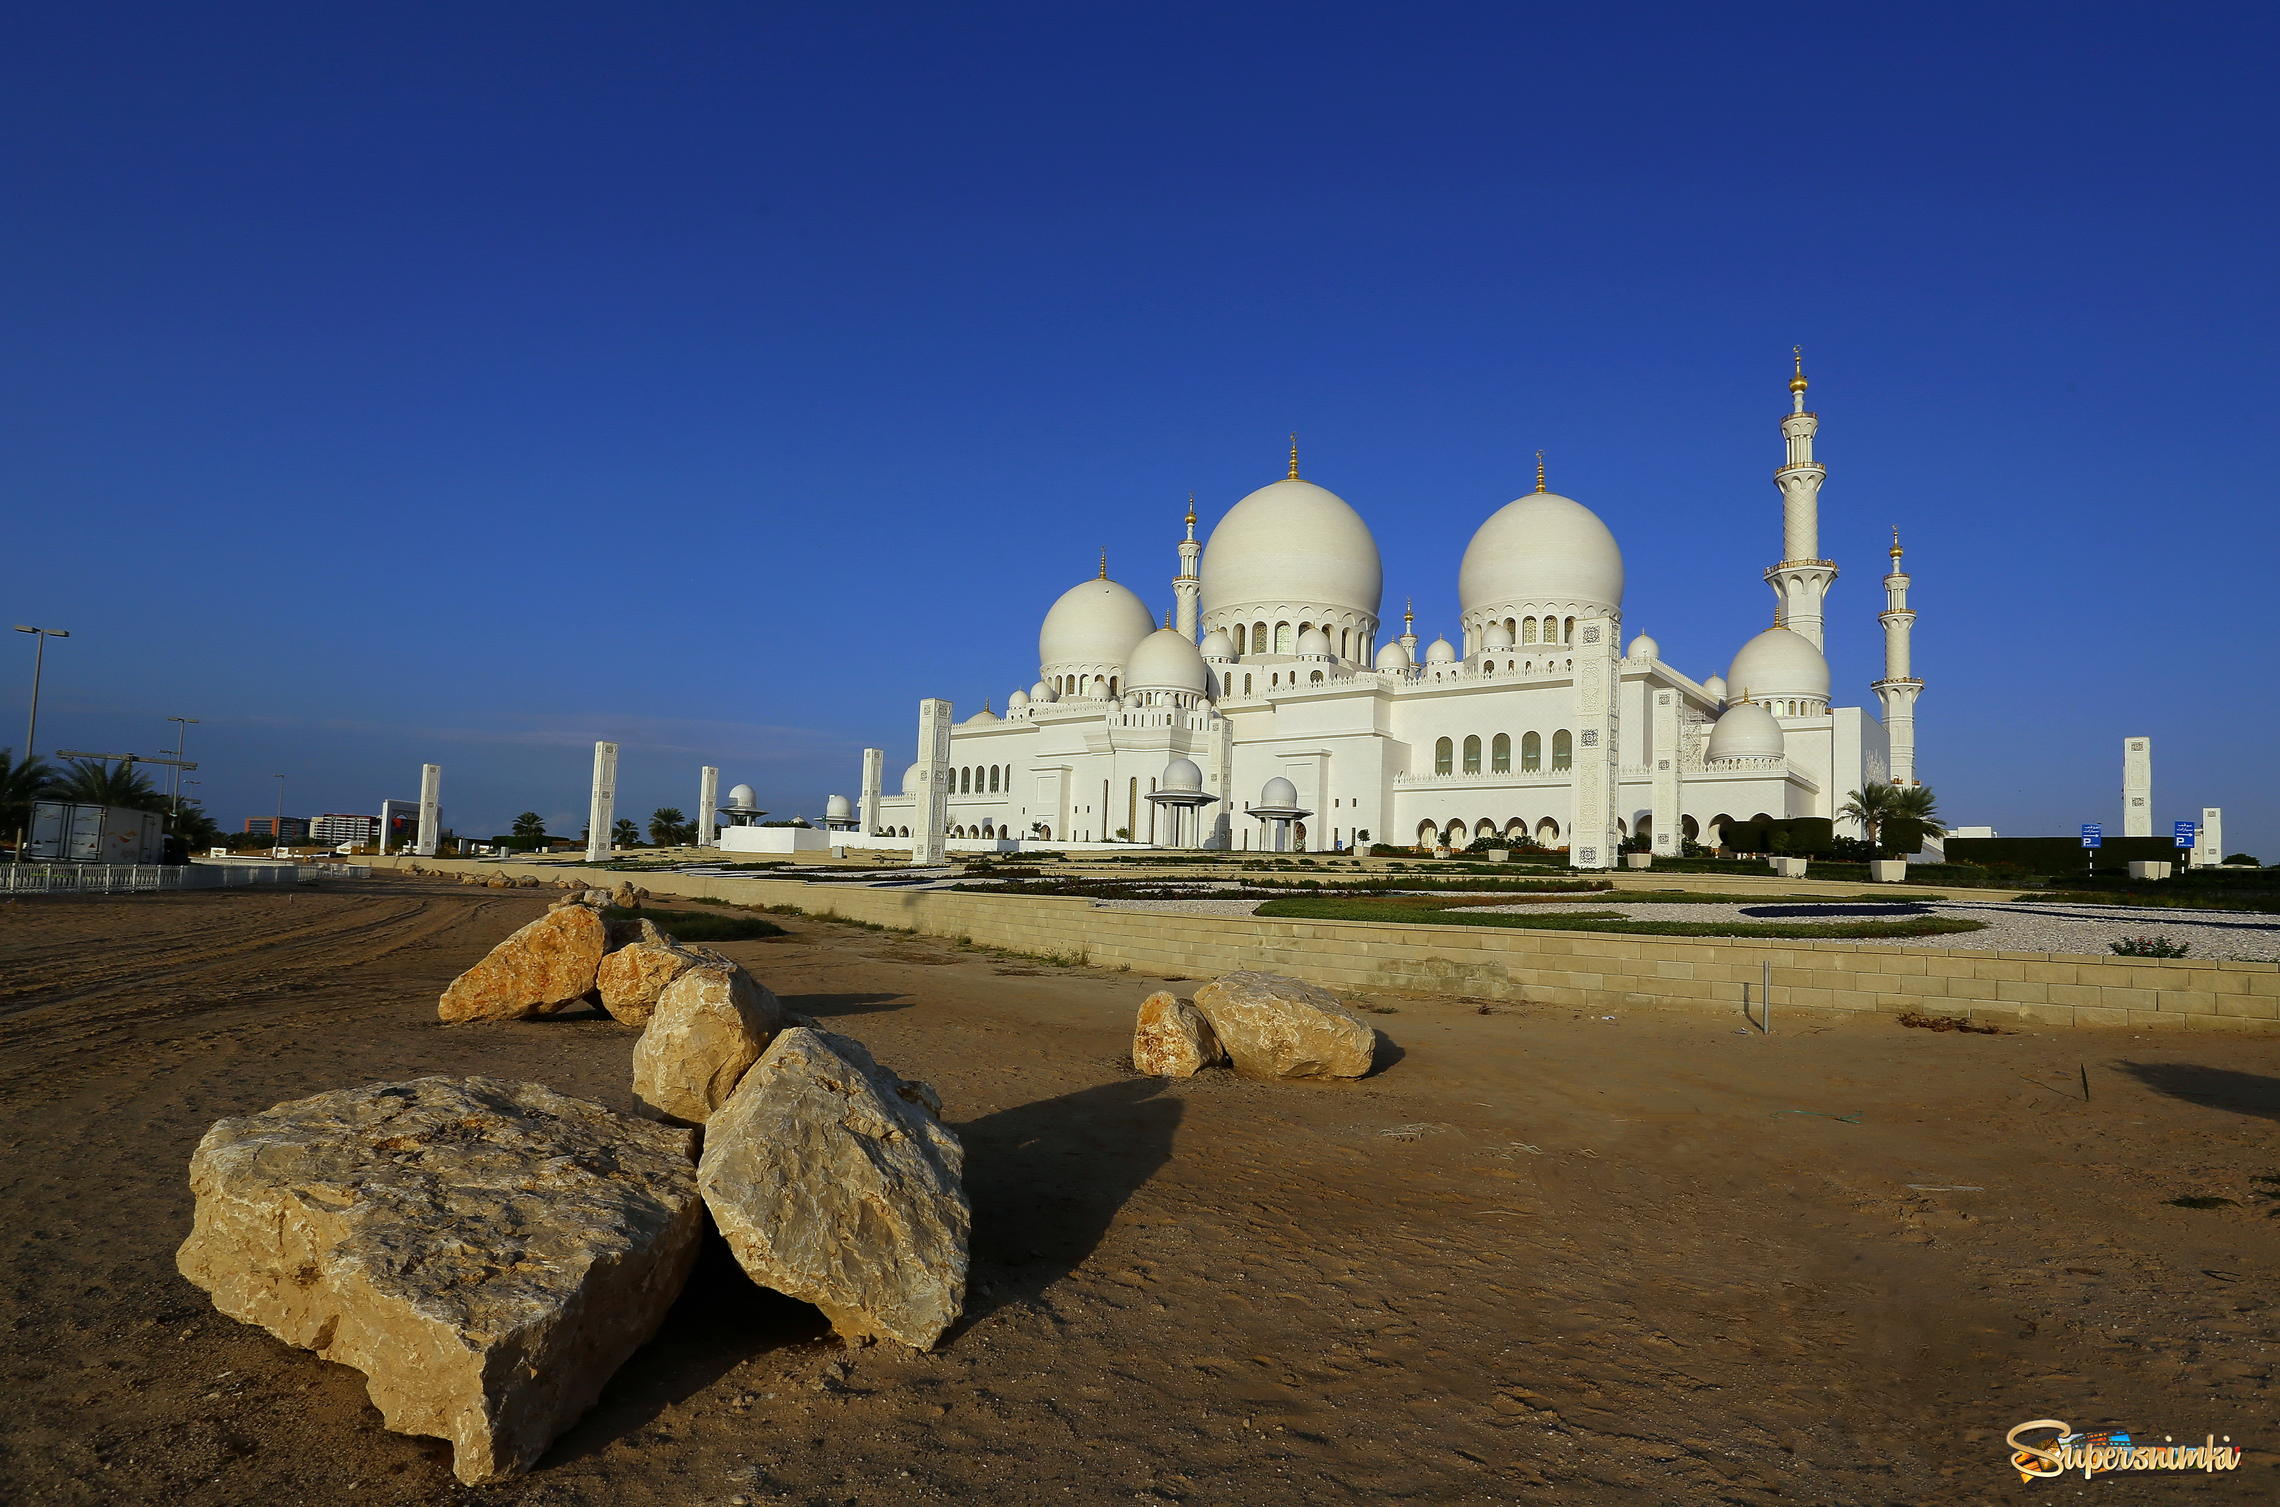  Мечеть Шейха Зайеда в Абу-Даби.